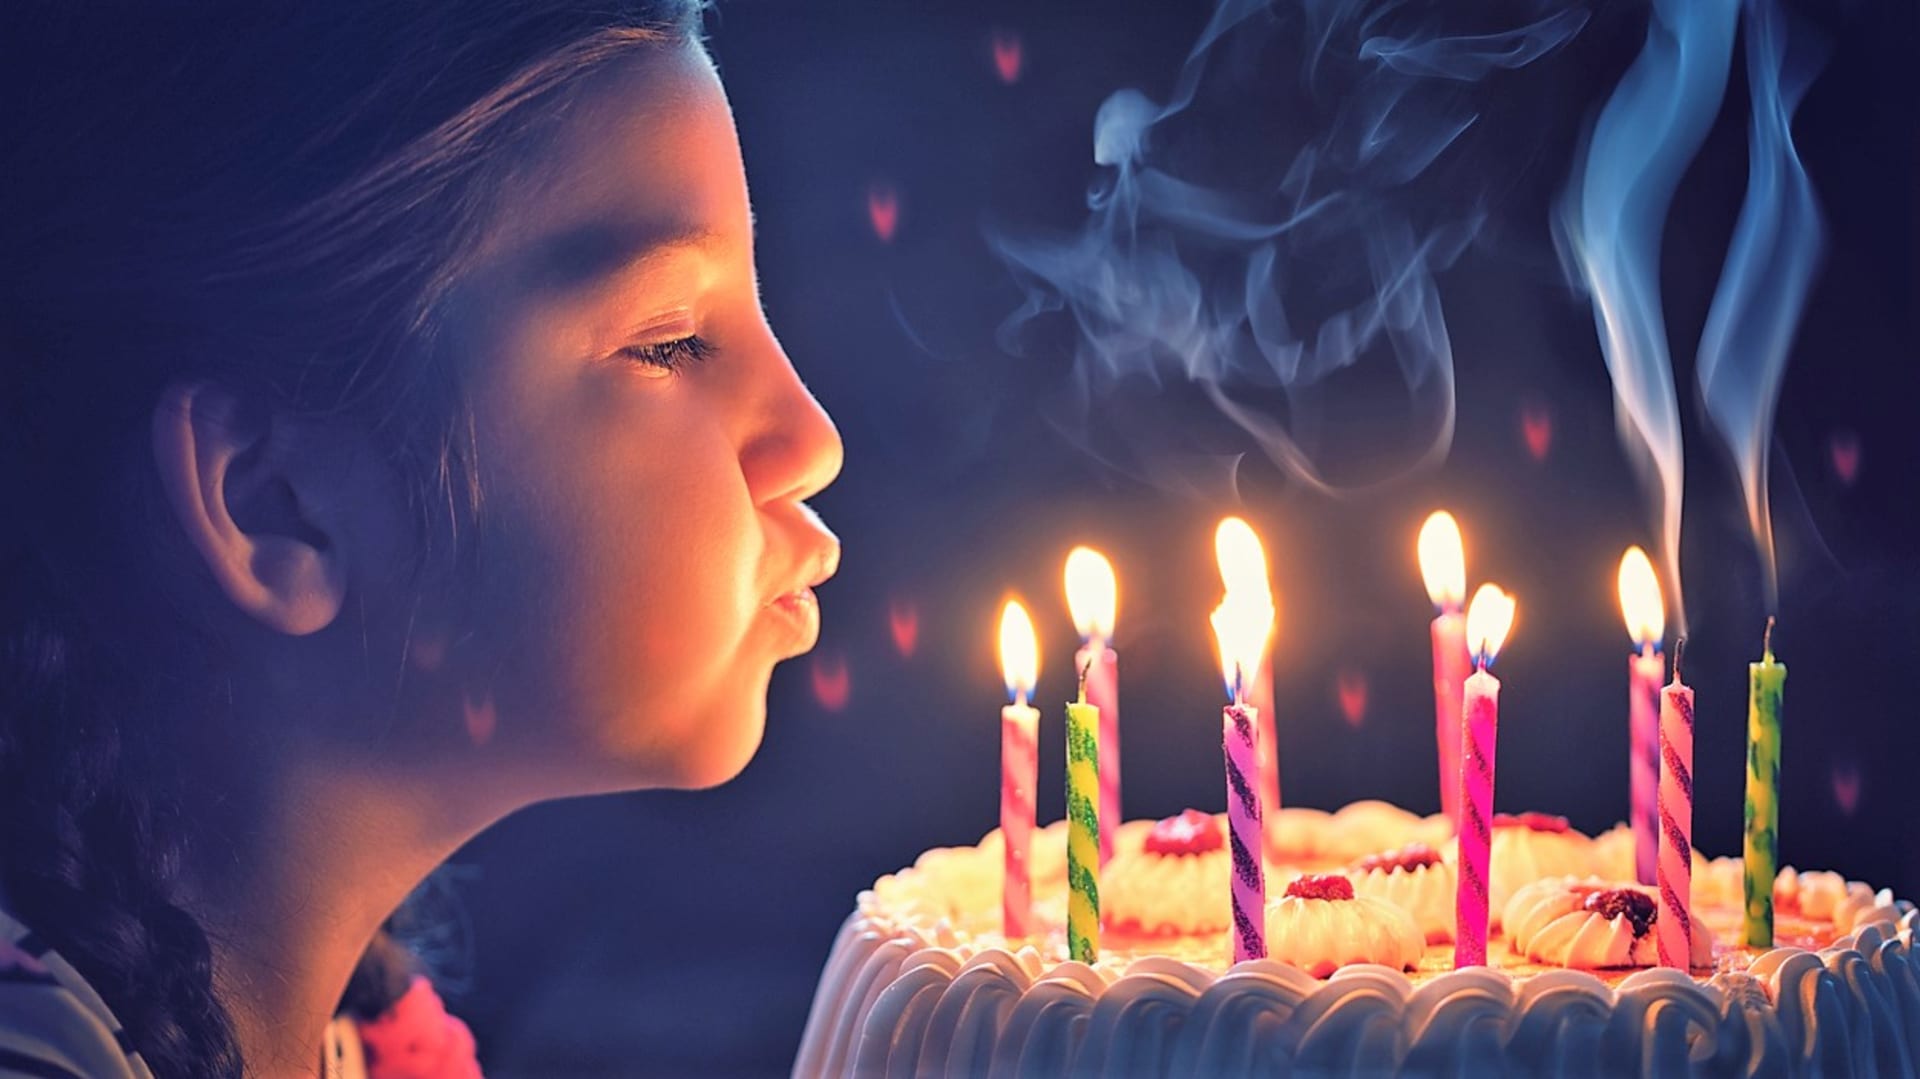 Většina si prožila svůj první svíčkový rituál v dětství, když sfoukávala svíčky na narozeninovém dortu a přitom v duchu vyslovila své přání a doufala, že se splní.